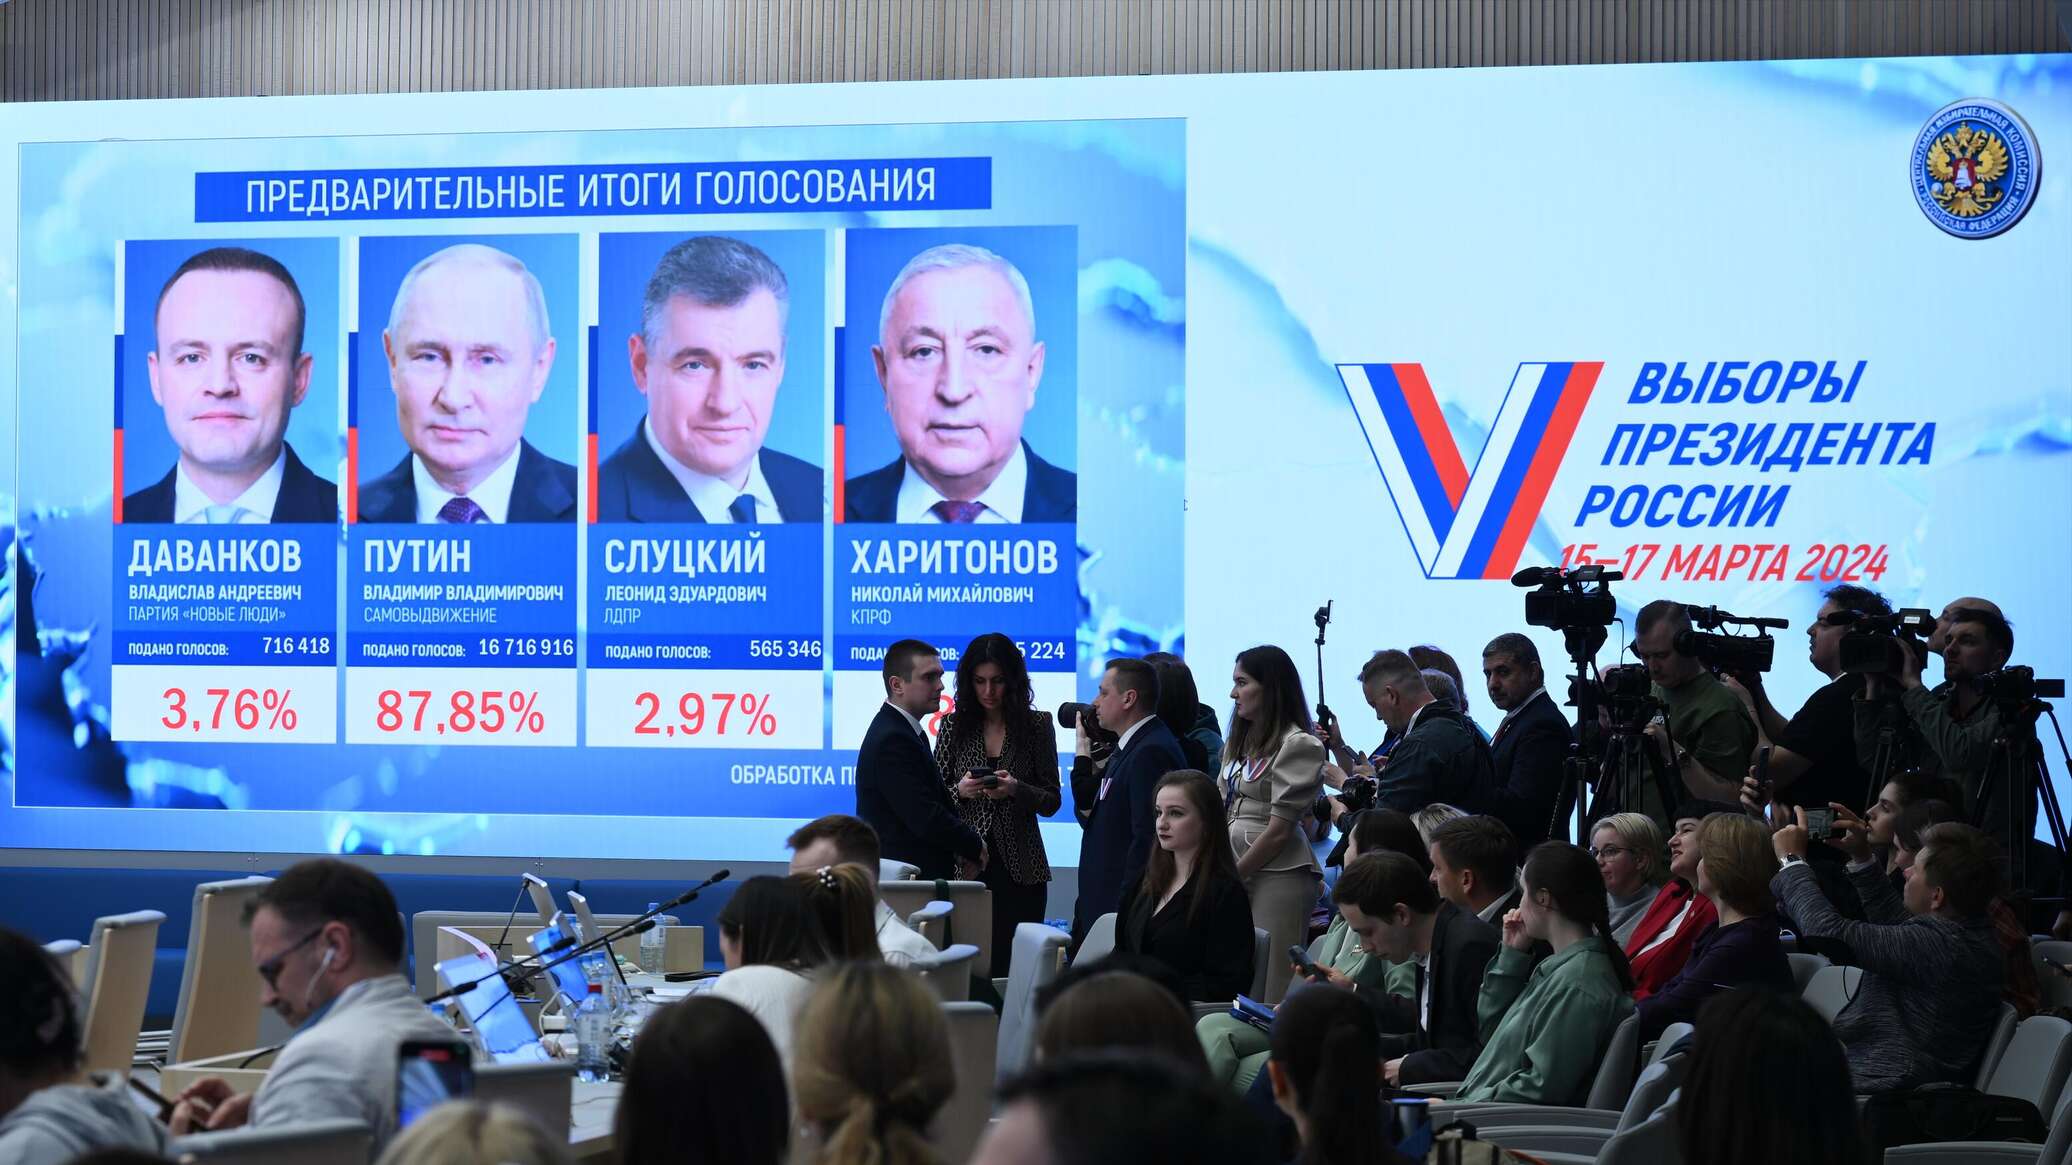 بوتين يتصدر الانتخابات الرئاسية بنسبة 87.15 % من الأصوات بعد فرز 80% من أوراق الاقتراع